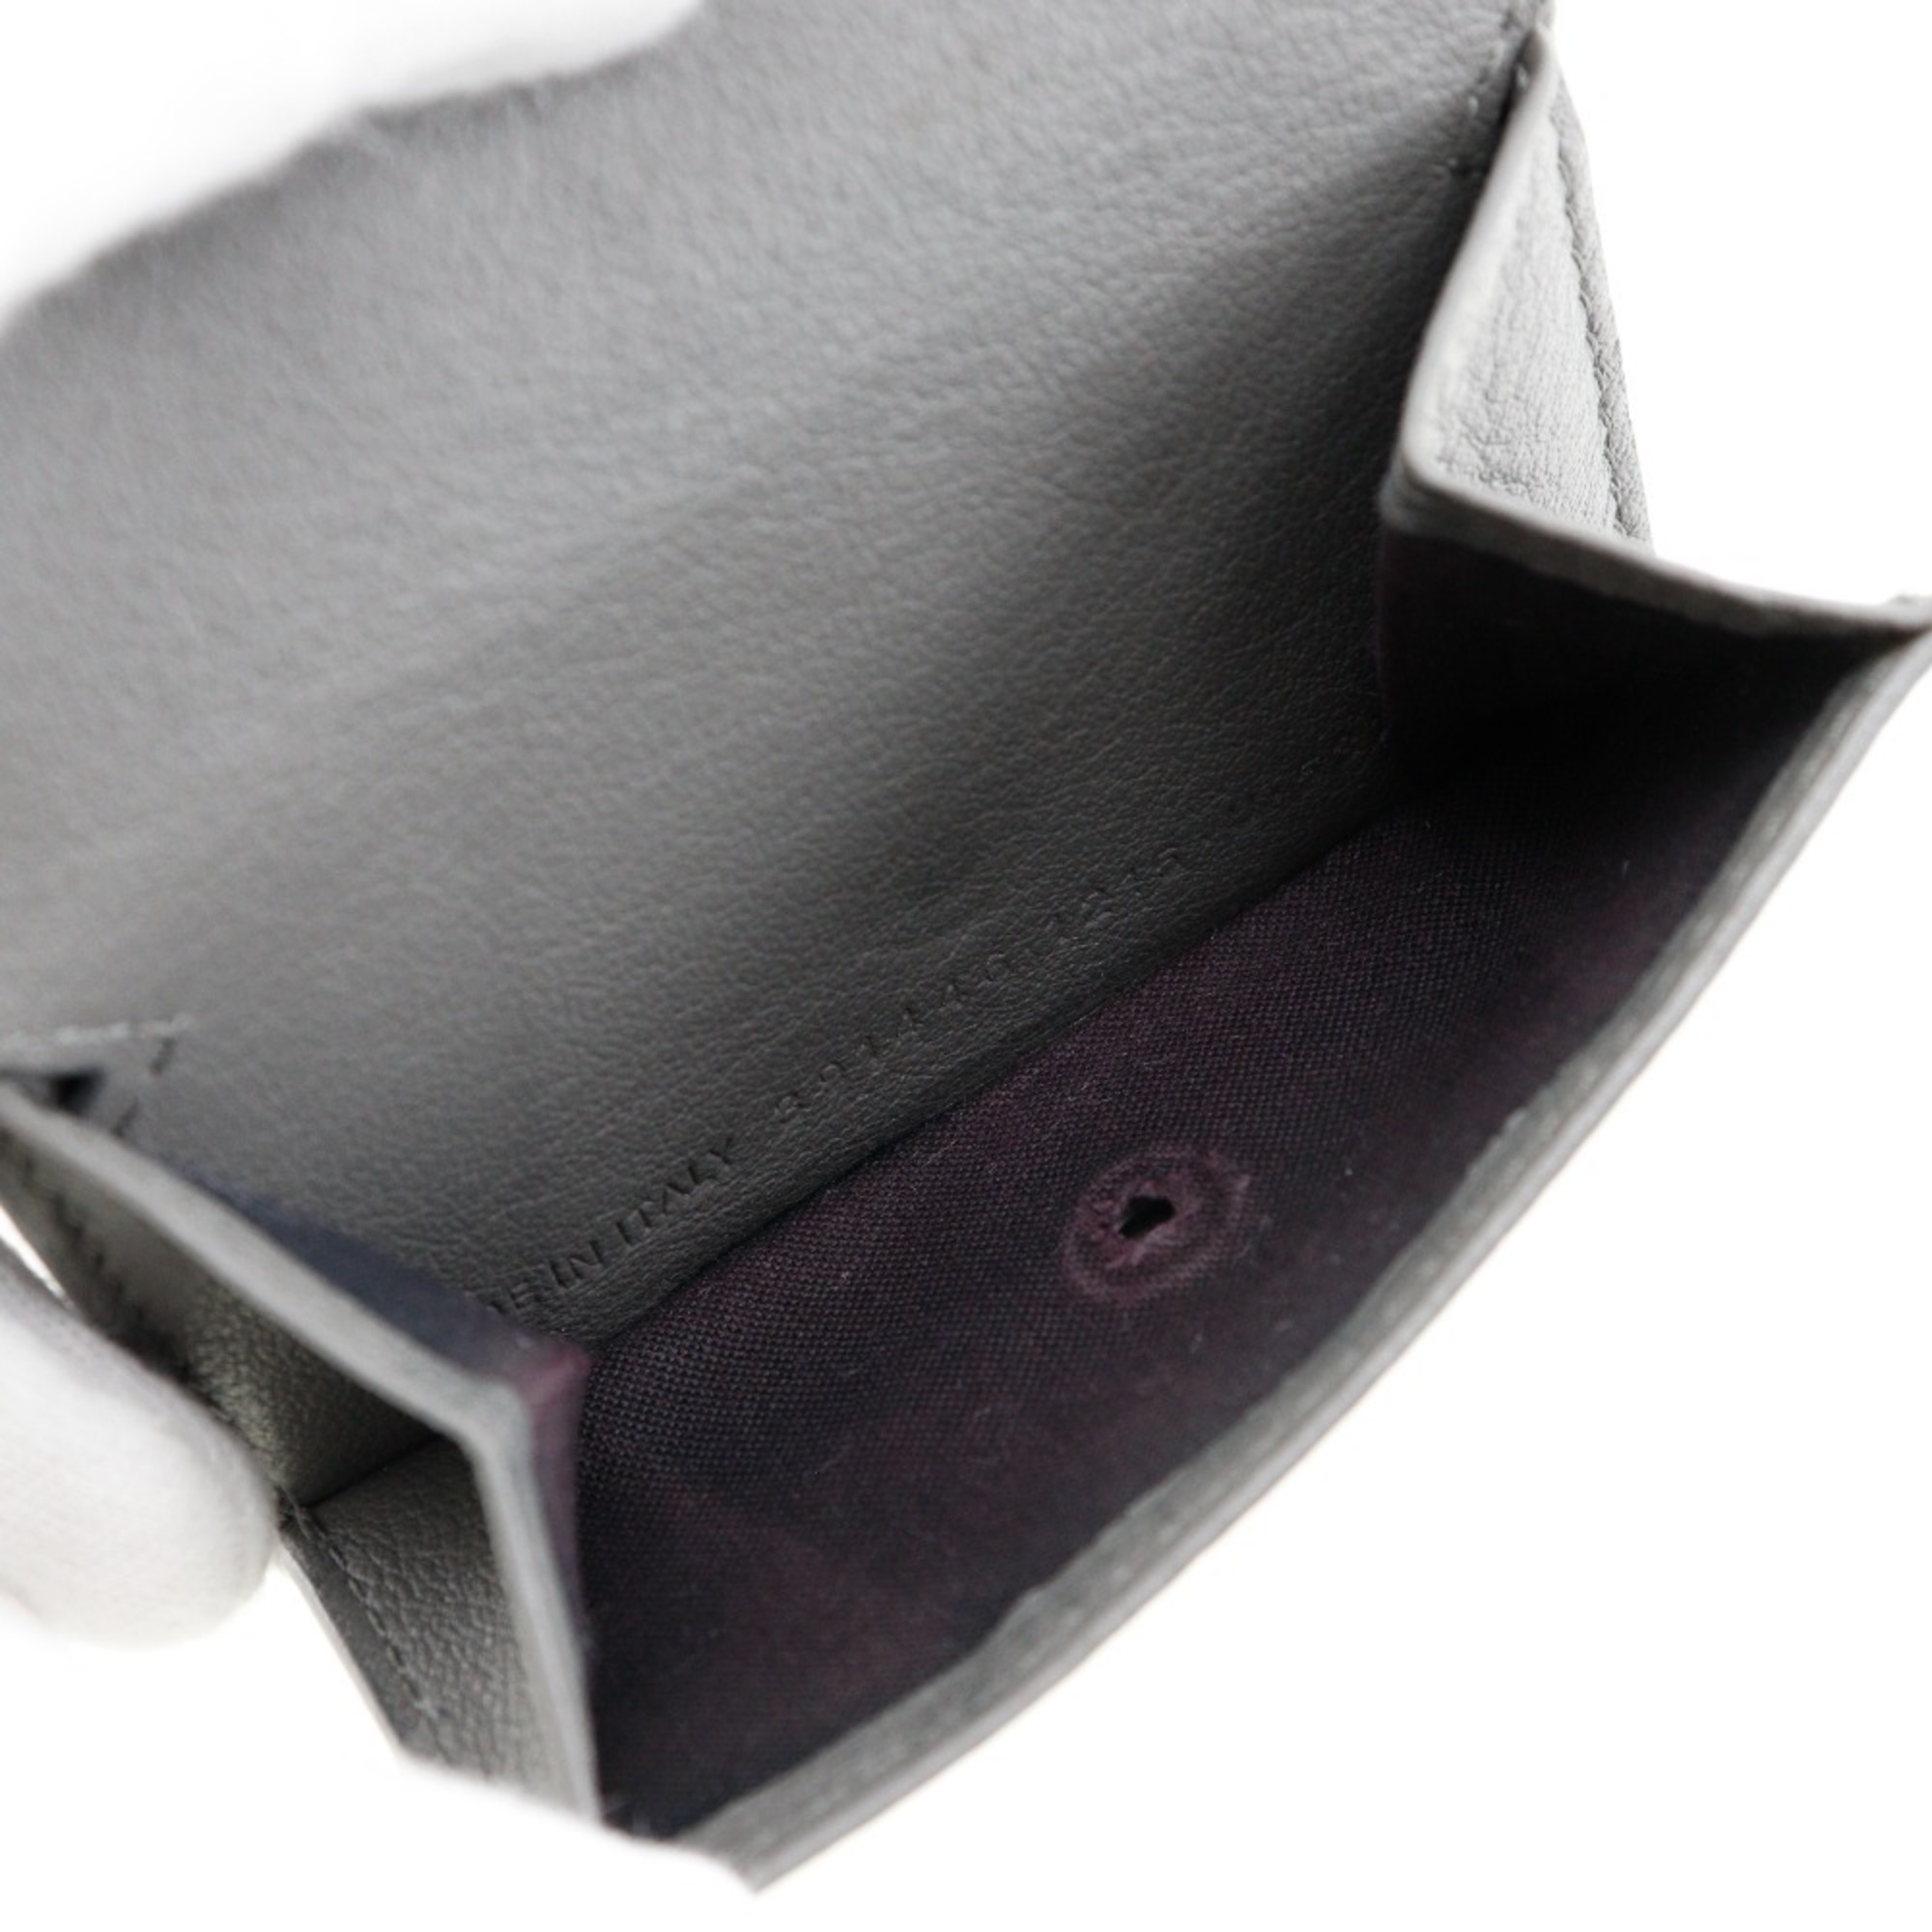 BALENCIAGA Paper Wallet Trifold Calf Snap Button Men's Women's I120824077